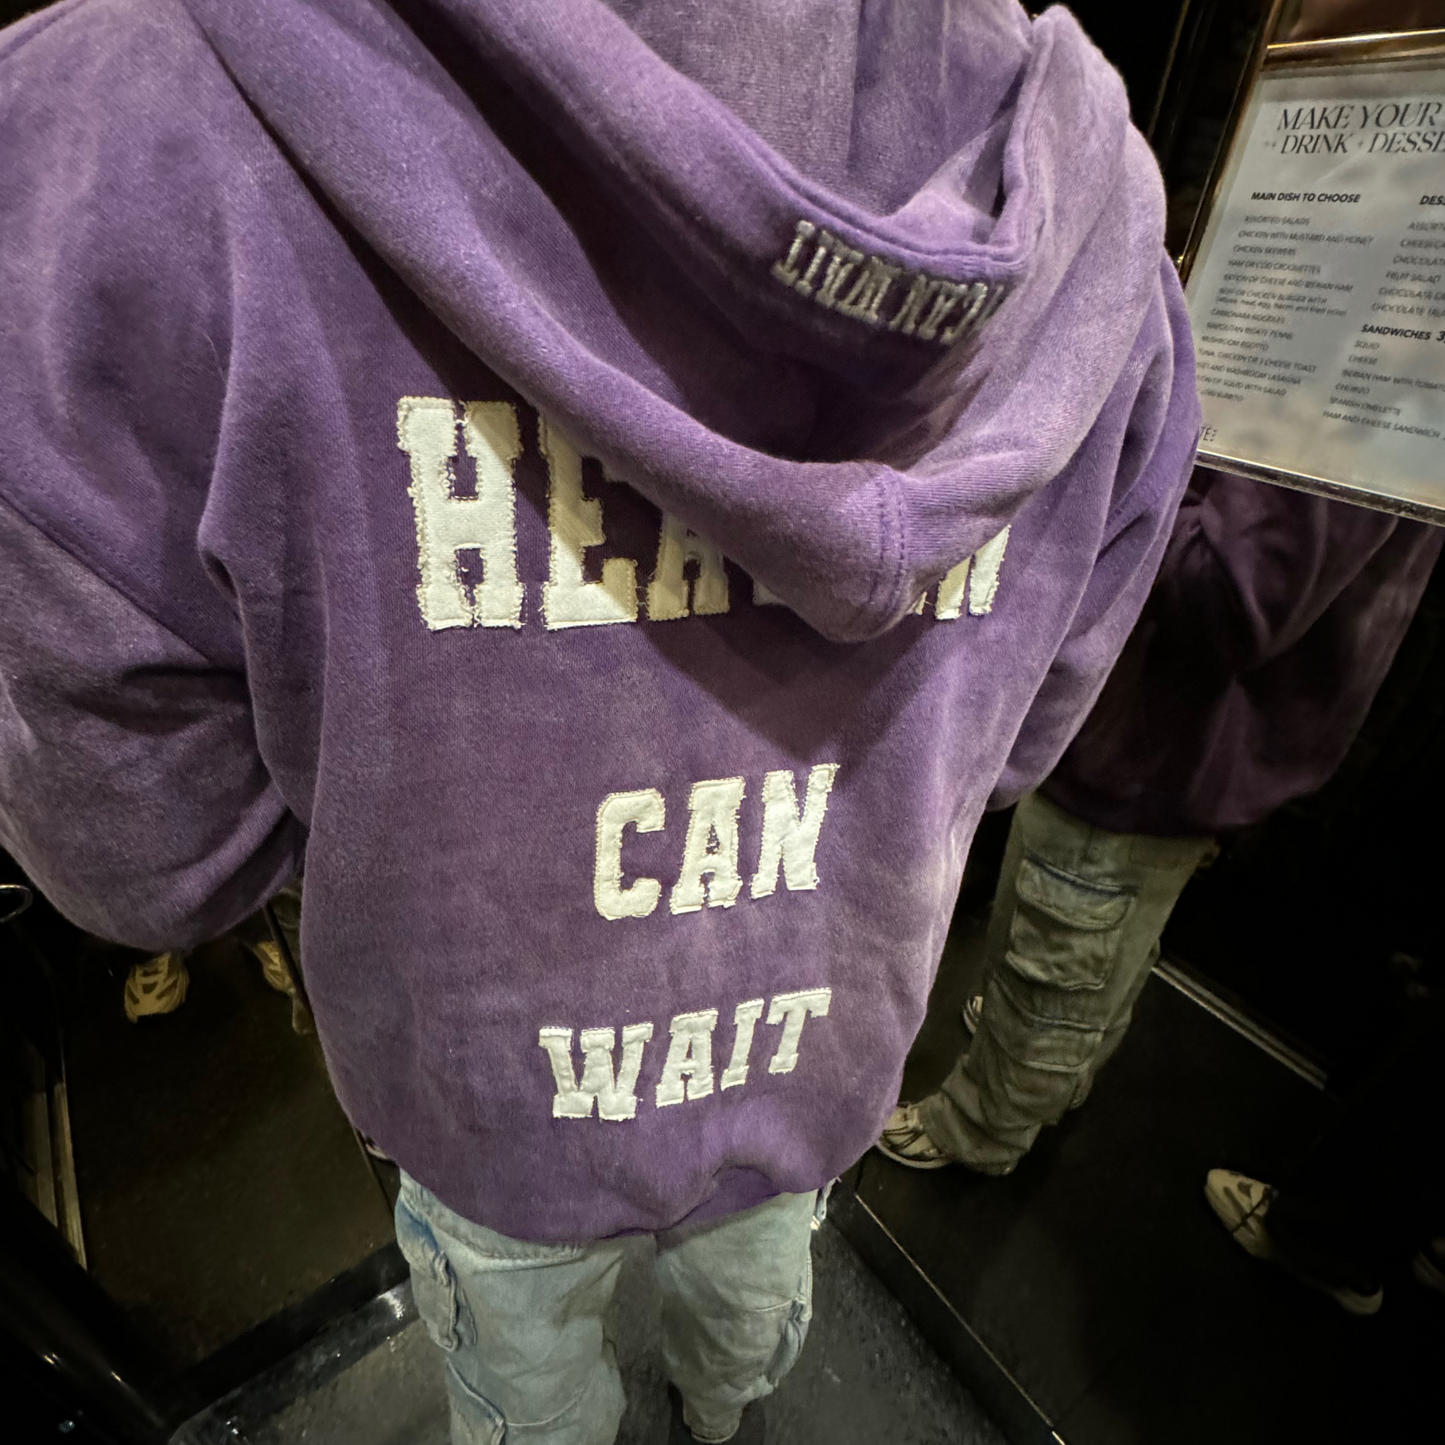 'HEAVEN CAN WAIT' zipper hoodie (purple)